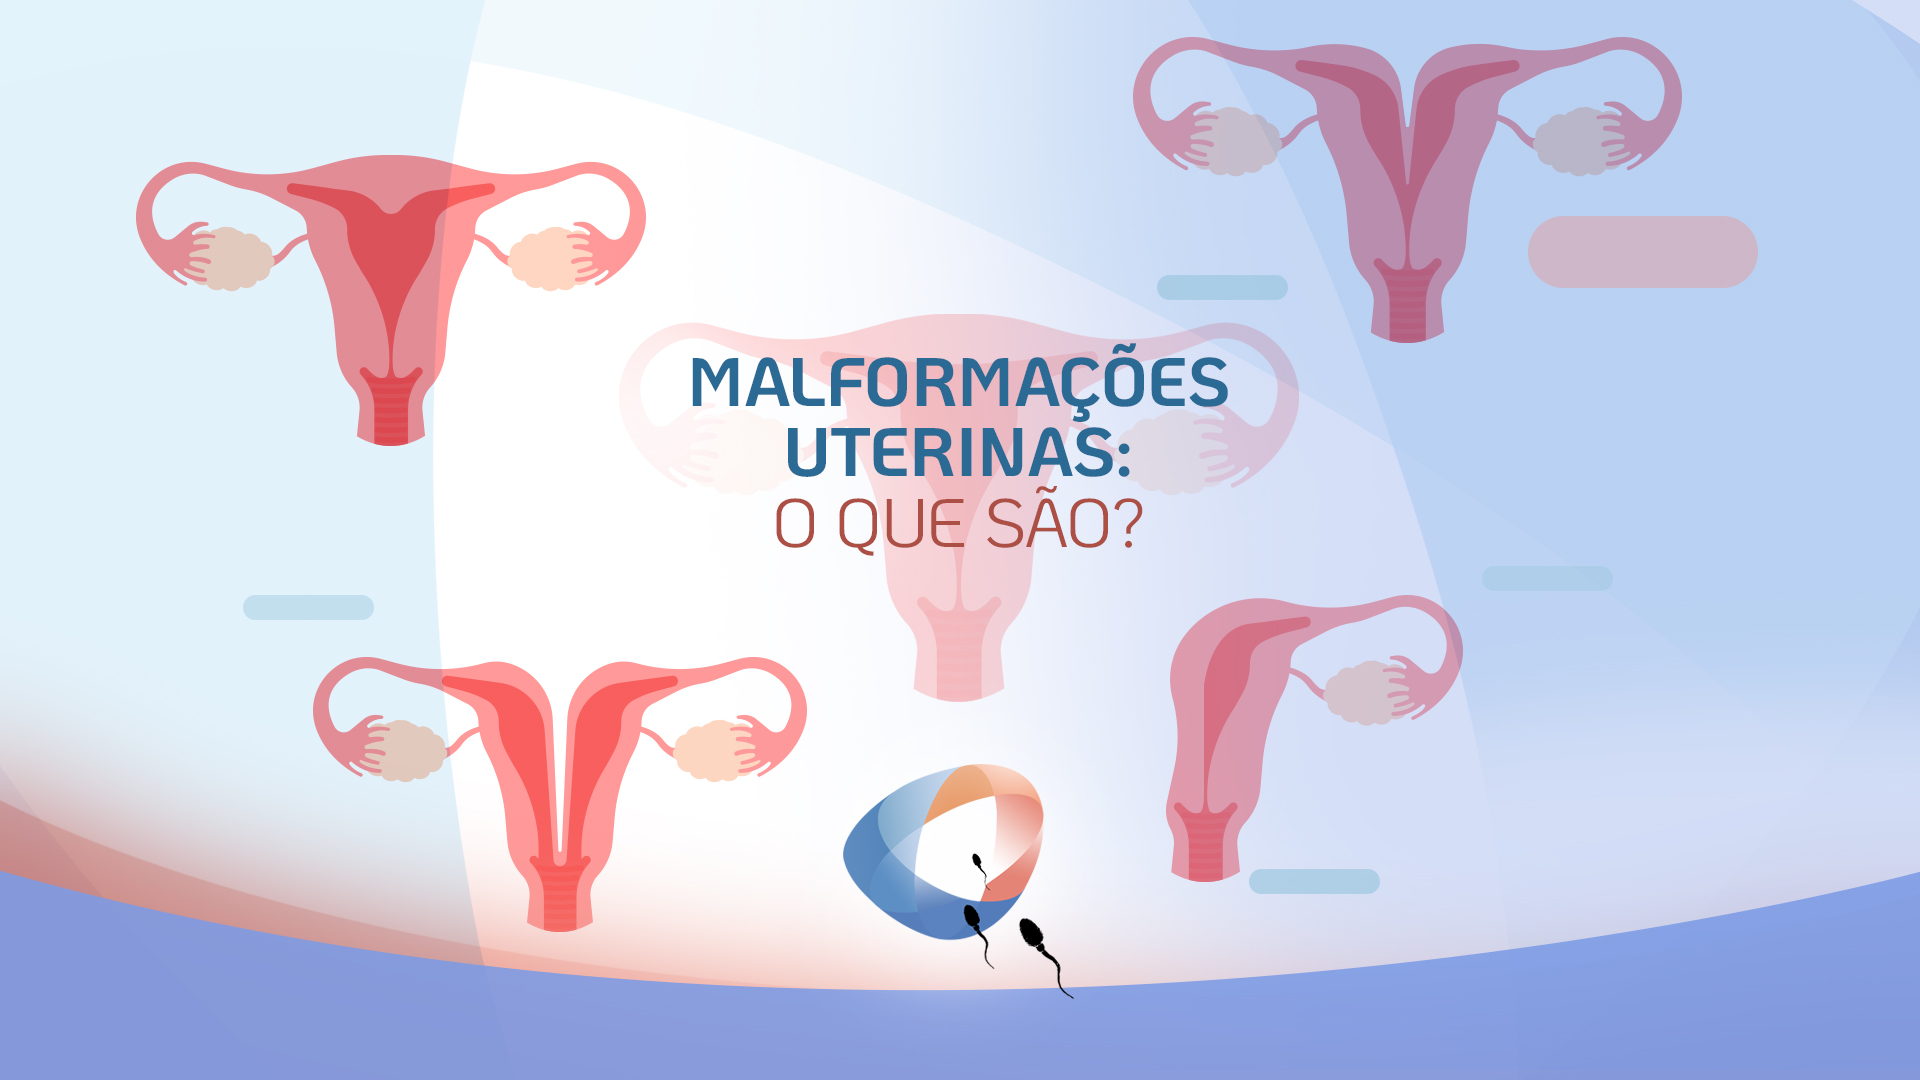 Malformações uterinas: o que são?